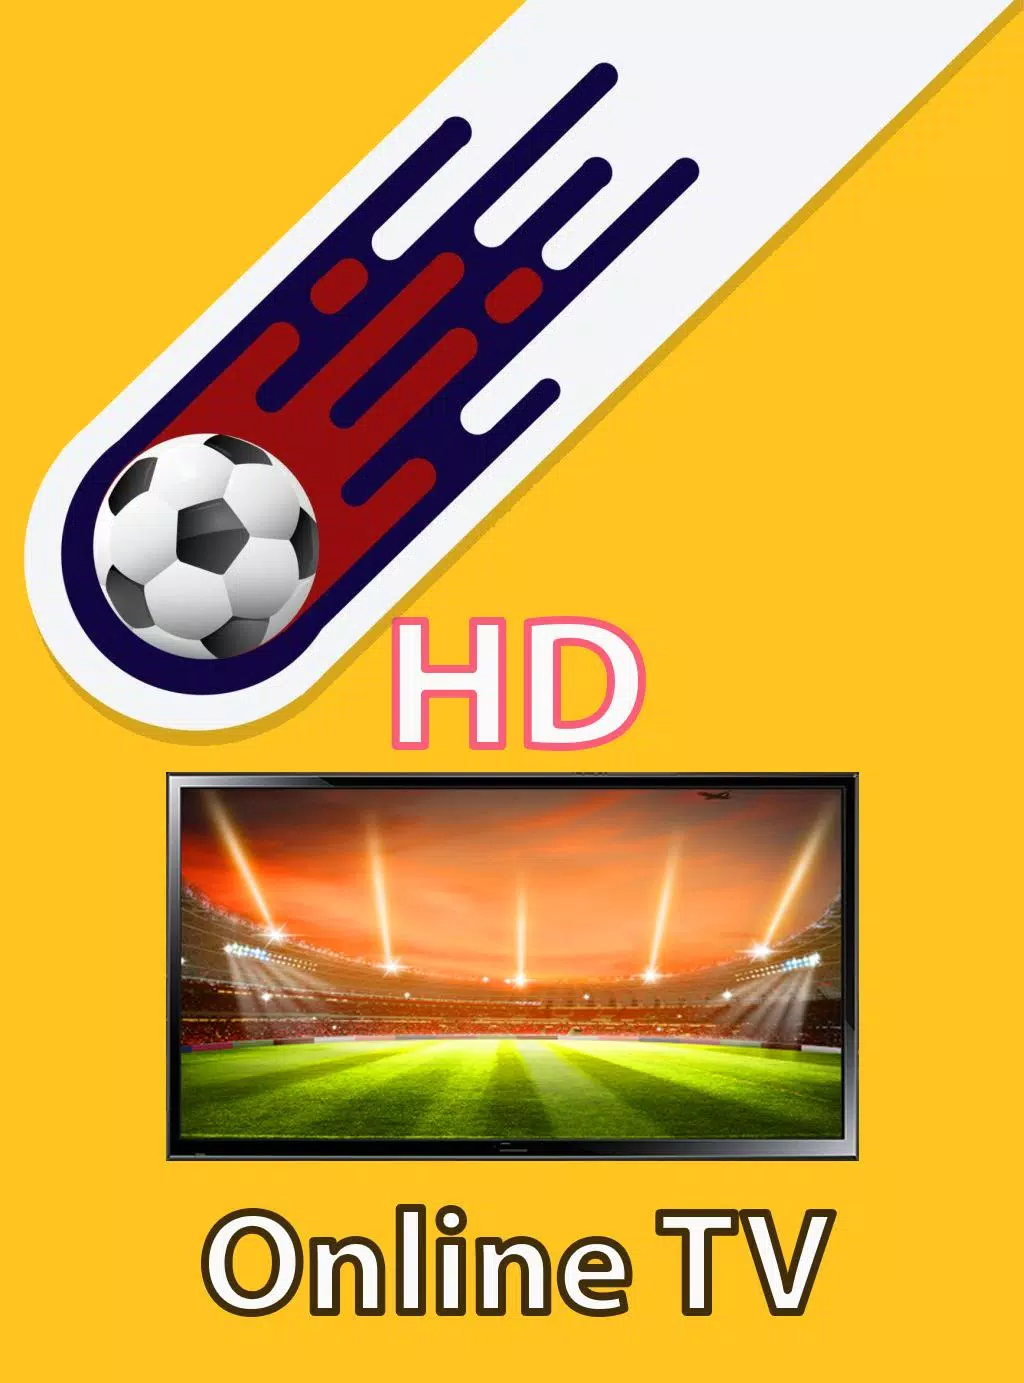 Il live stream delle partite di calcio è in HD for Android - APK Download